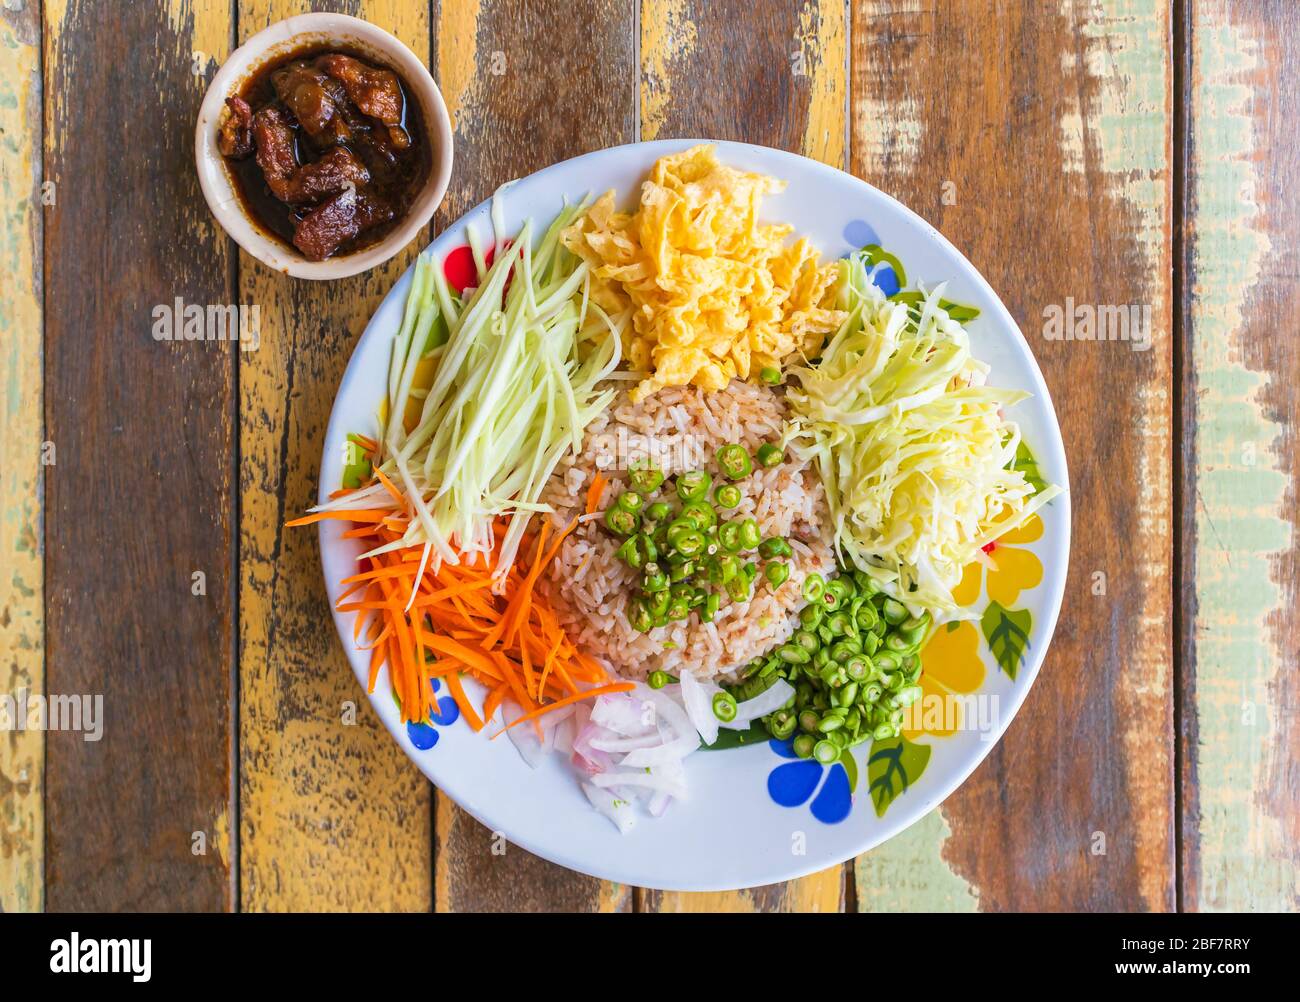 Reis mit Garnelenpaste gewürzt Servieren Sie mit Gemüse, Ei in Scheiben und würzigen Zutaten, Thai-Food-Stil Stockfoto